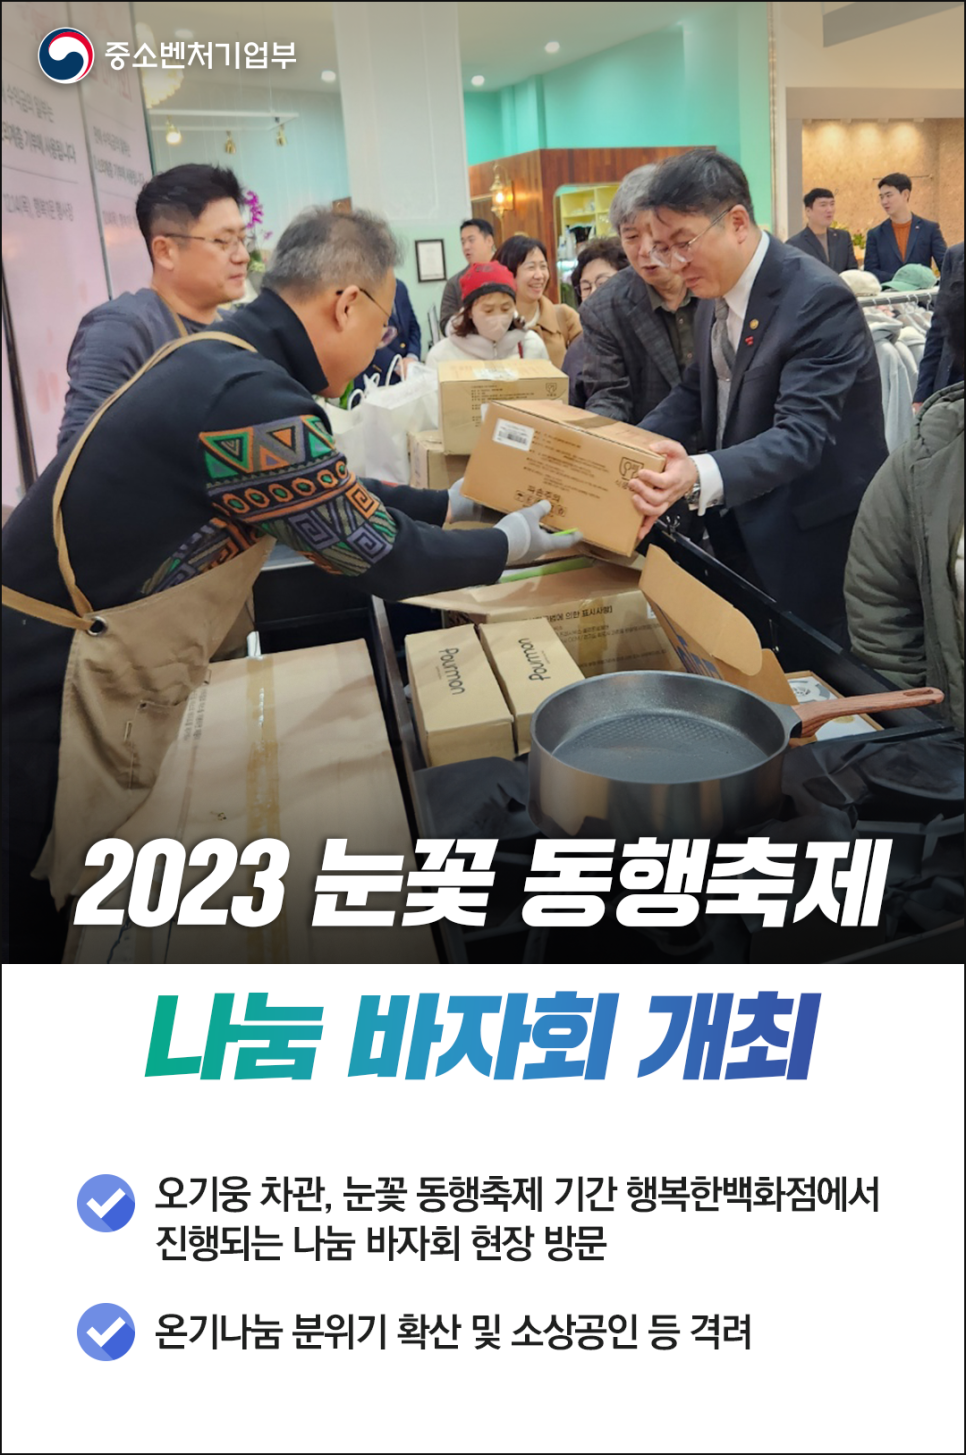 2023 눈꽃 동행축제 나눔 바자회 개최